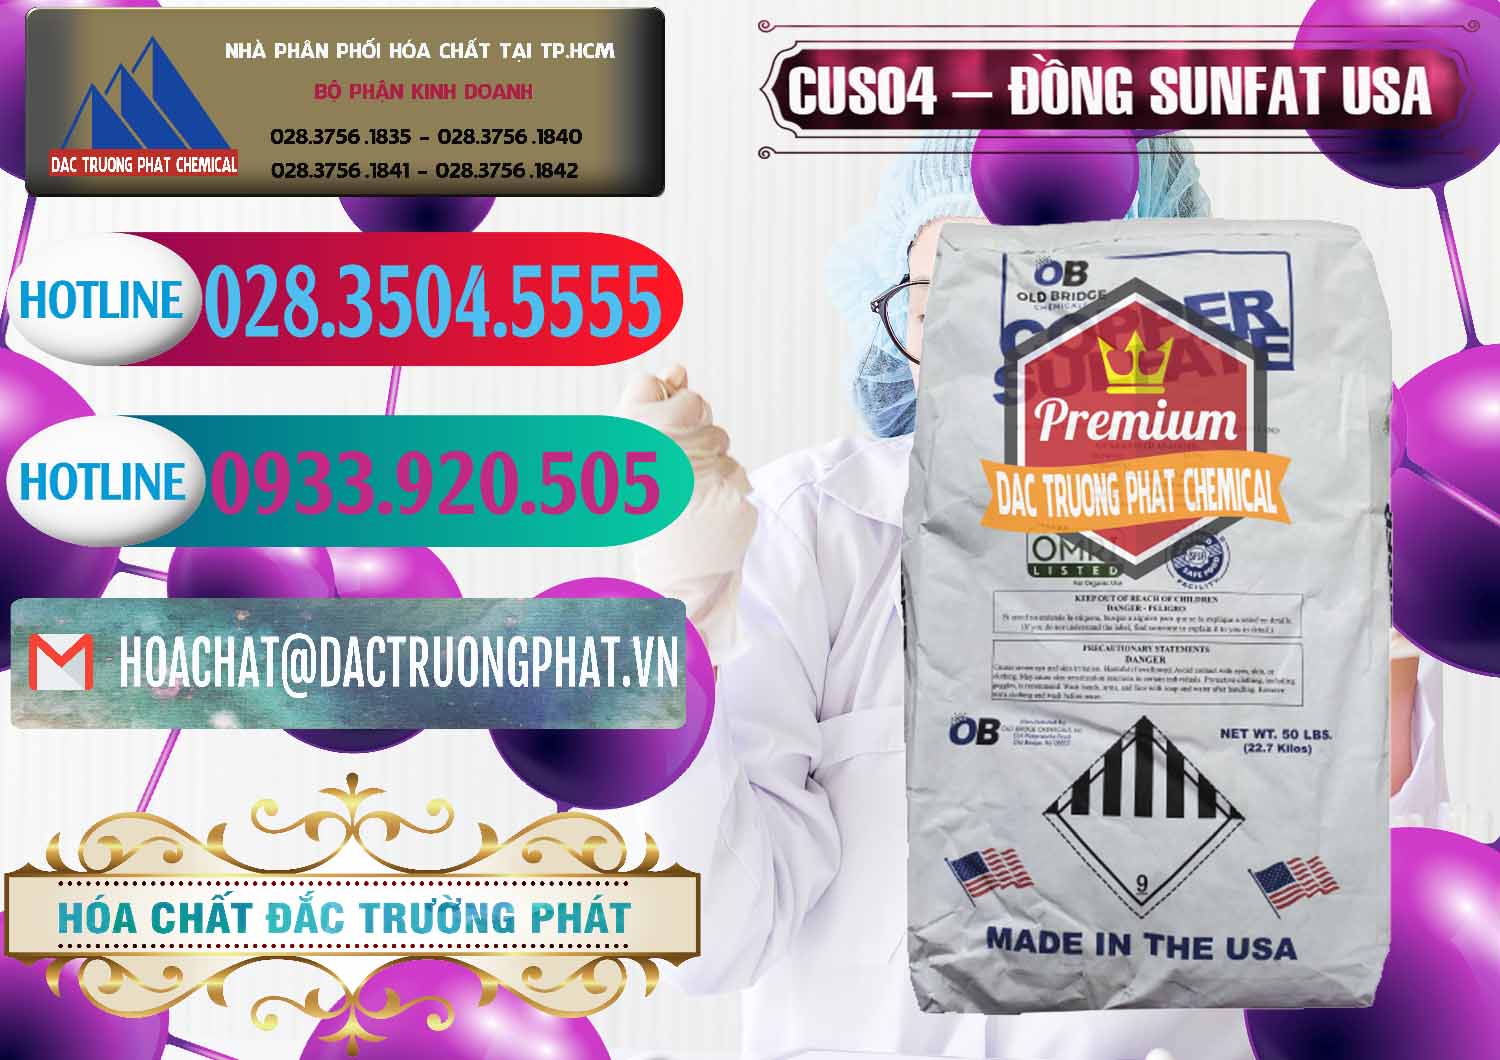 Kinh doanh & bán CuSO4 – Đồng Sunfat Mỹ USA - 0479 - Nơi bán và cung cấp hóa chất tại TP.HCM - truongphat.vn